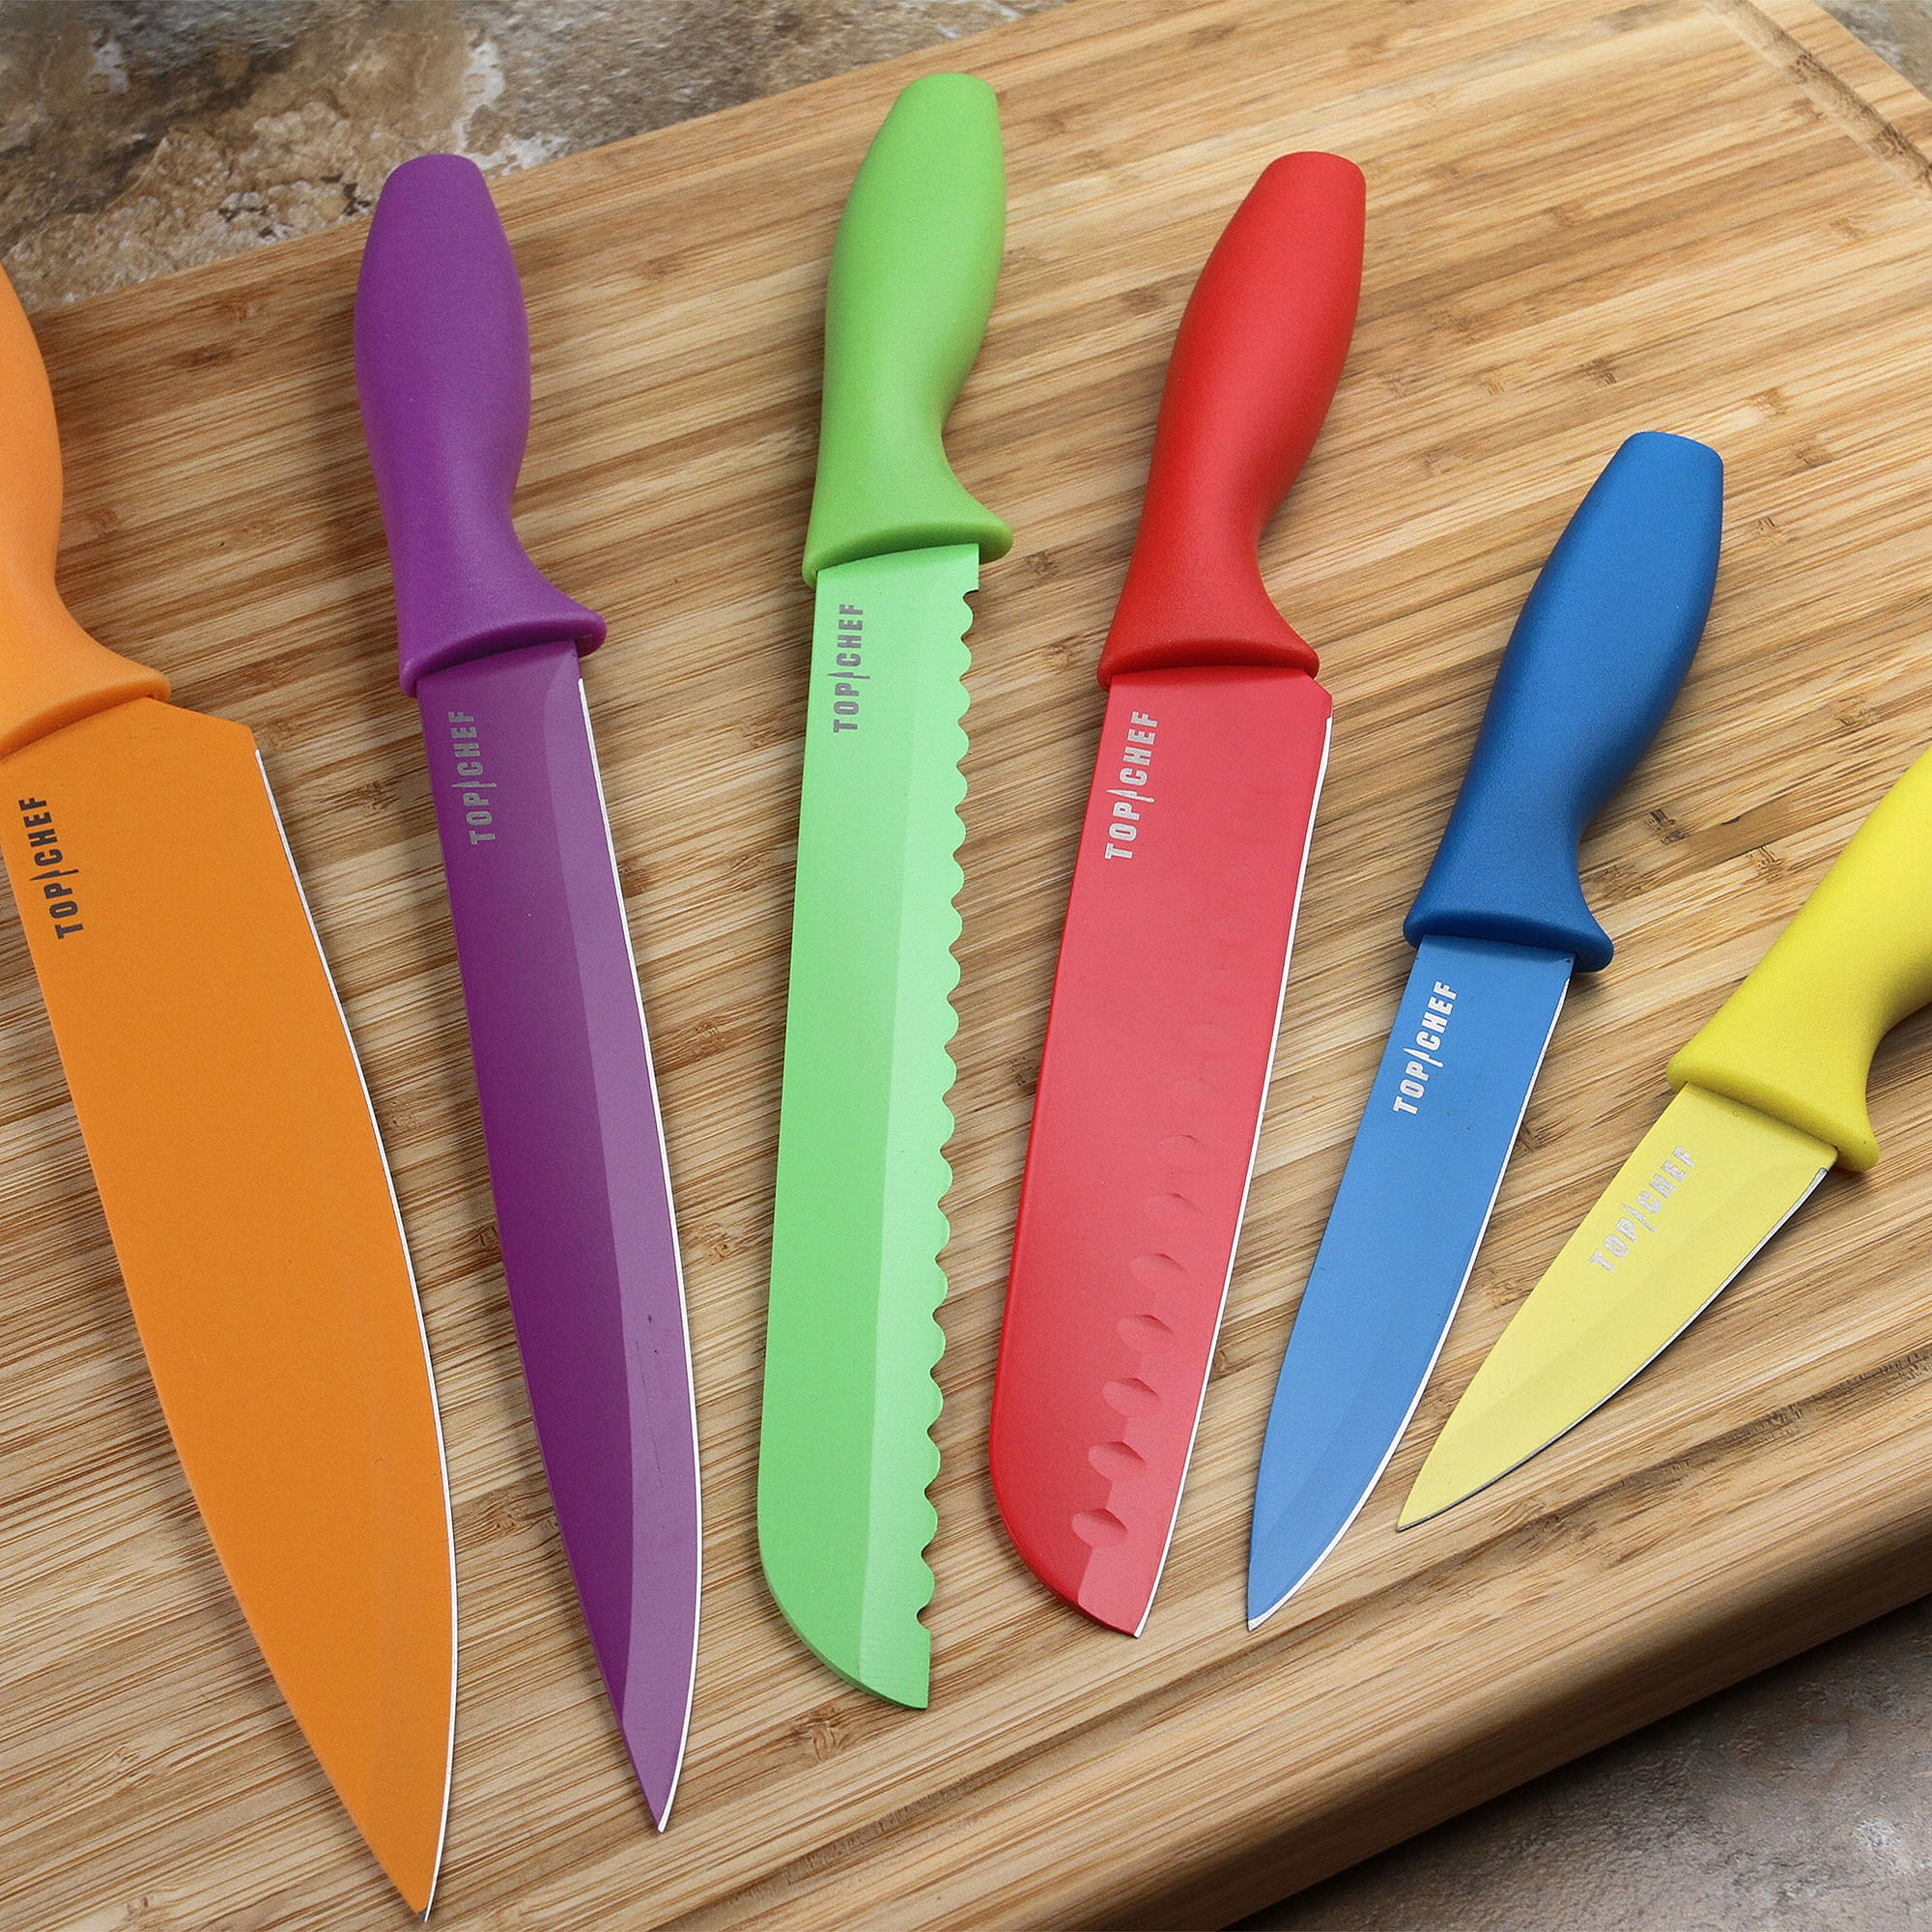 Top Chef 6 Piece Colored Knife Set Professional Grade Walmartcom